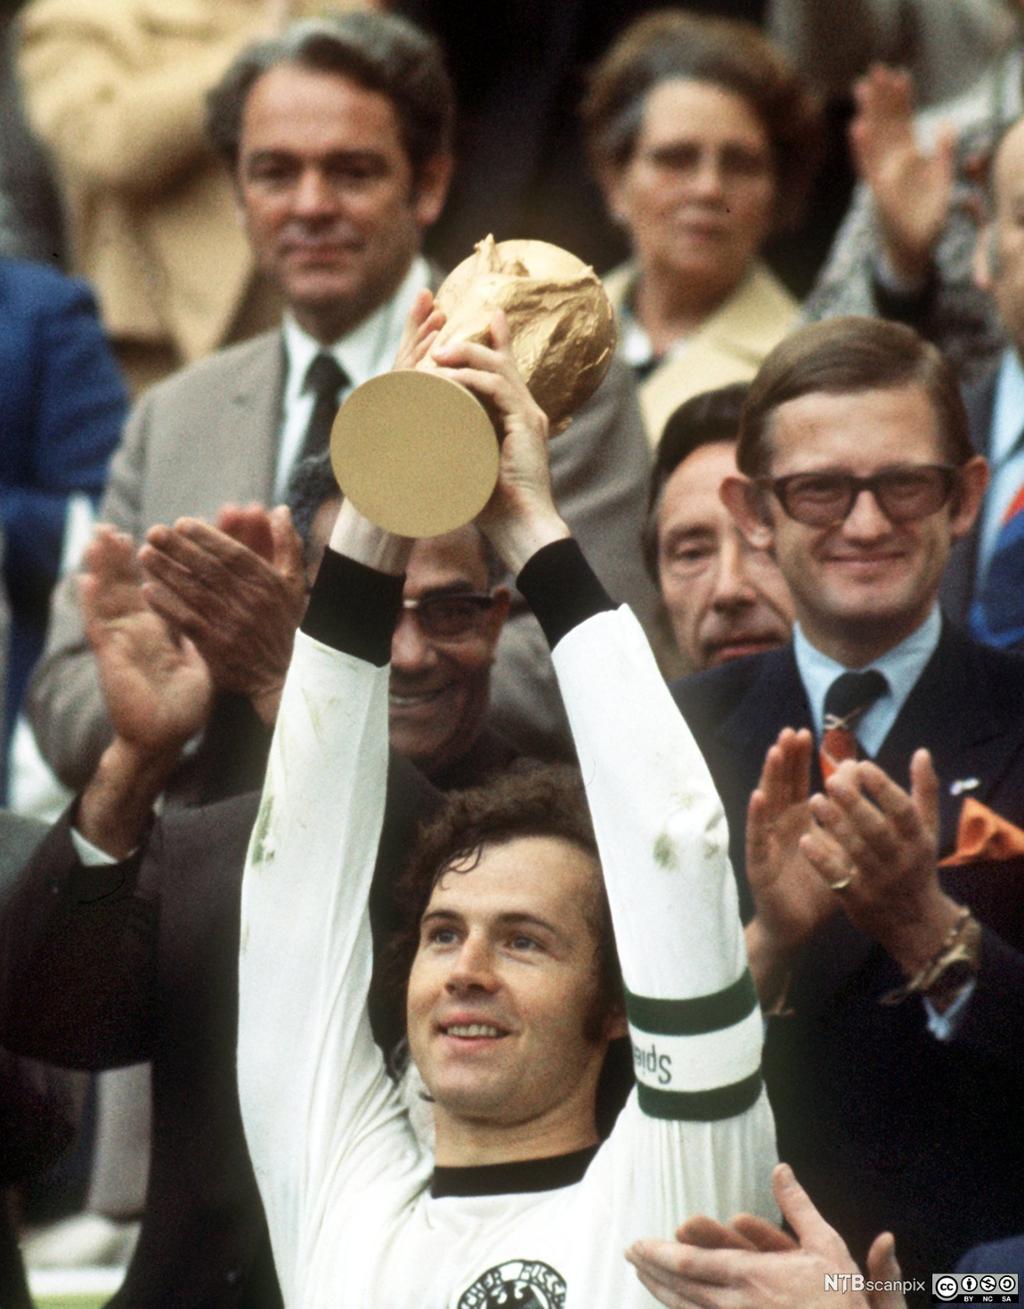 Franz Beckenbauer, tidligere kaptein på det tyske landslaget i fotball, løfter VM-pokalen. Foto.